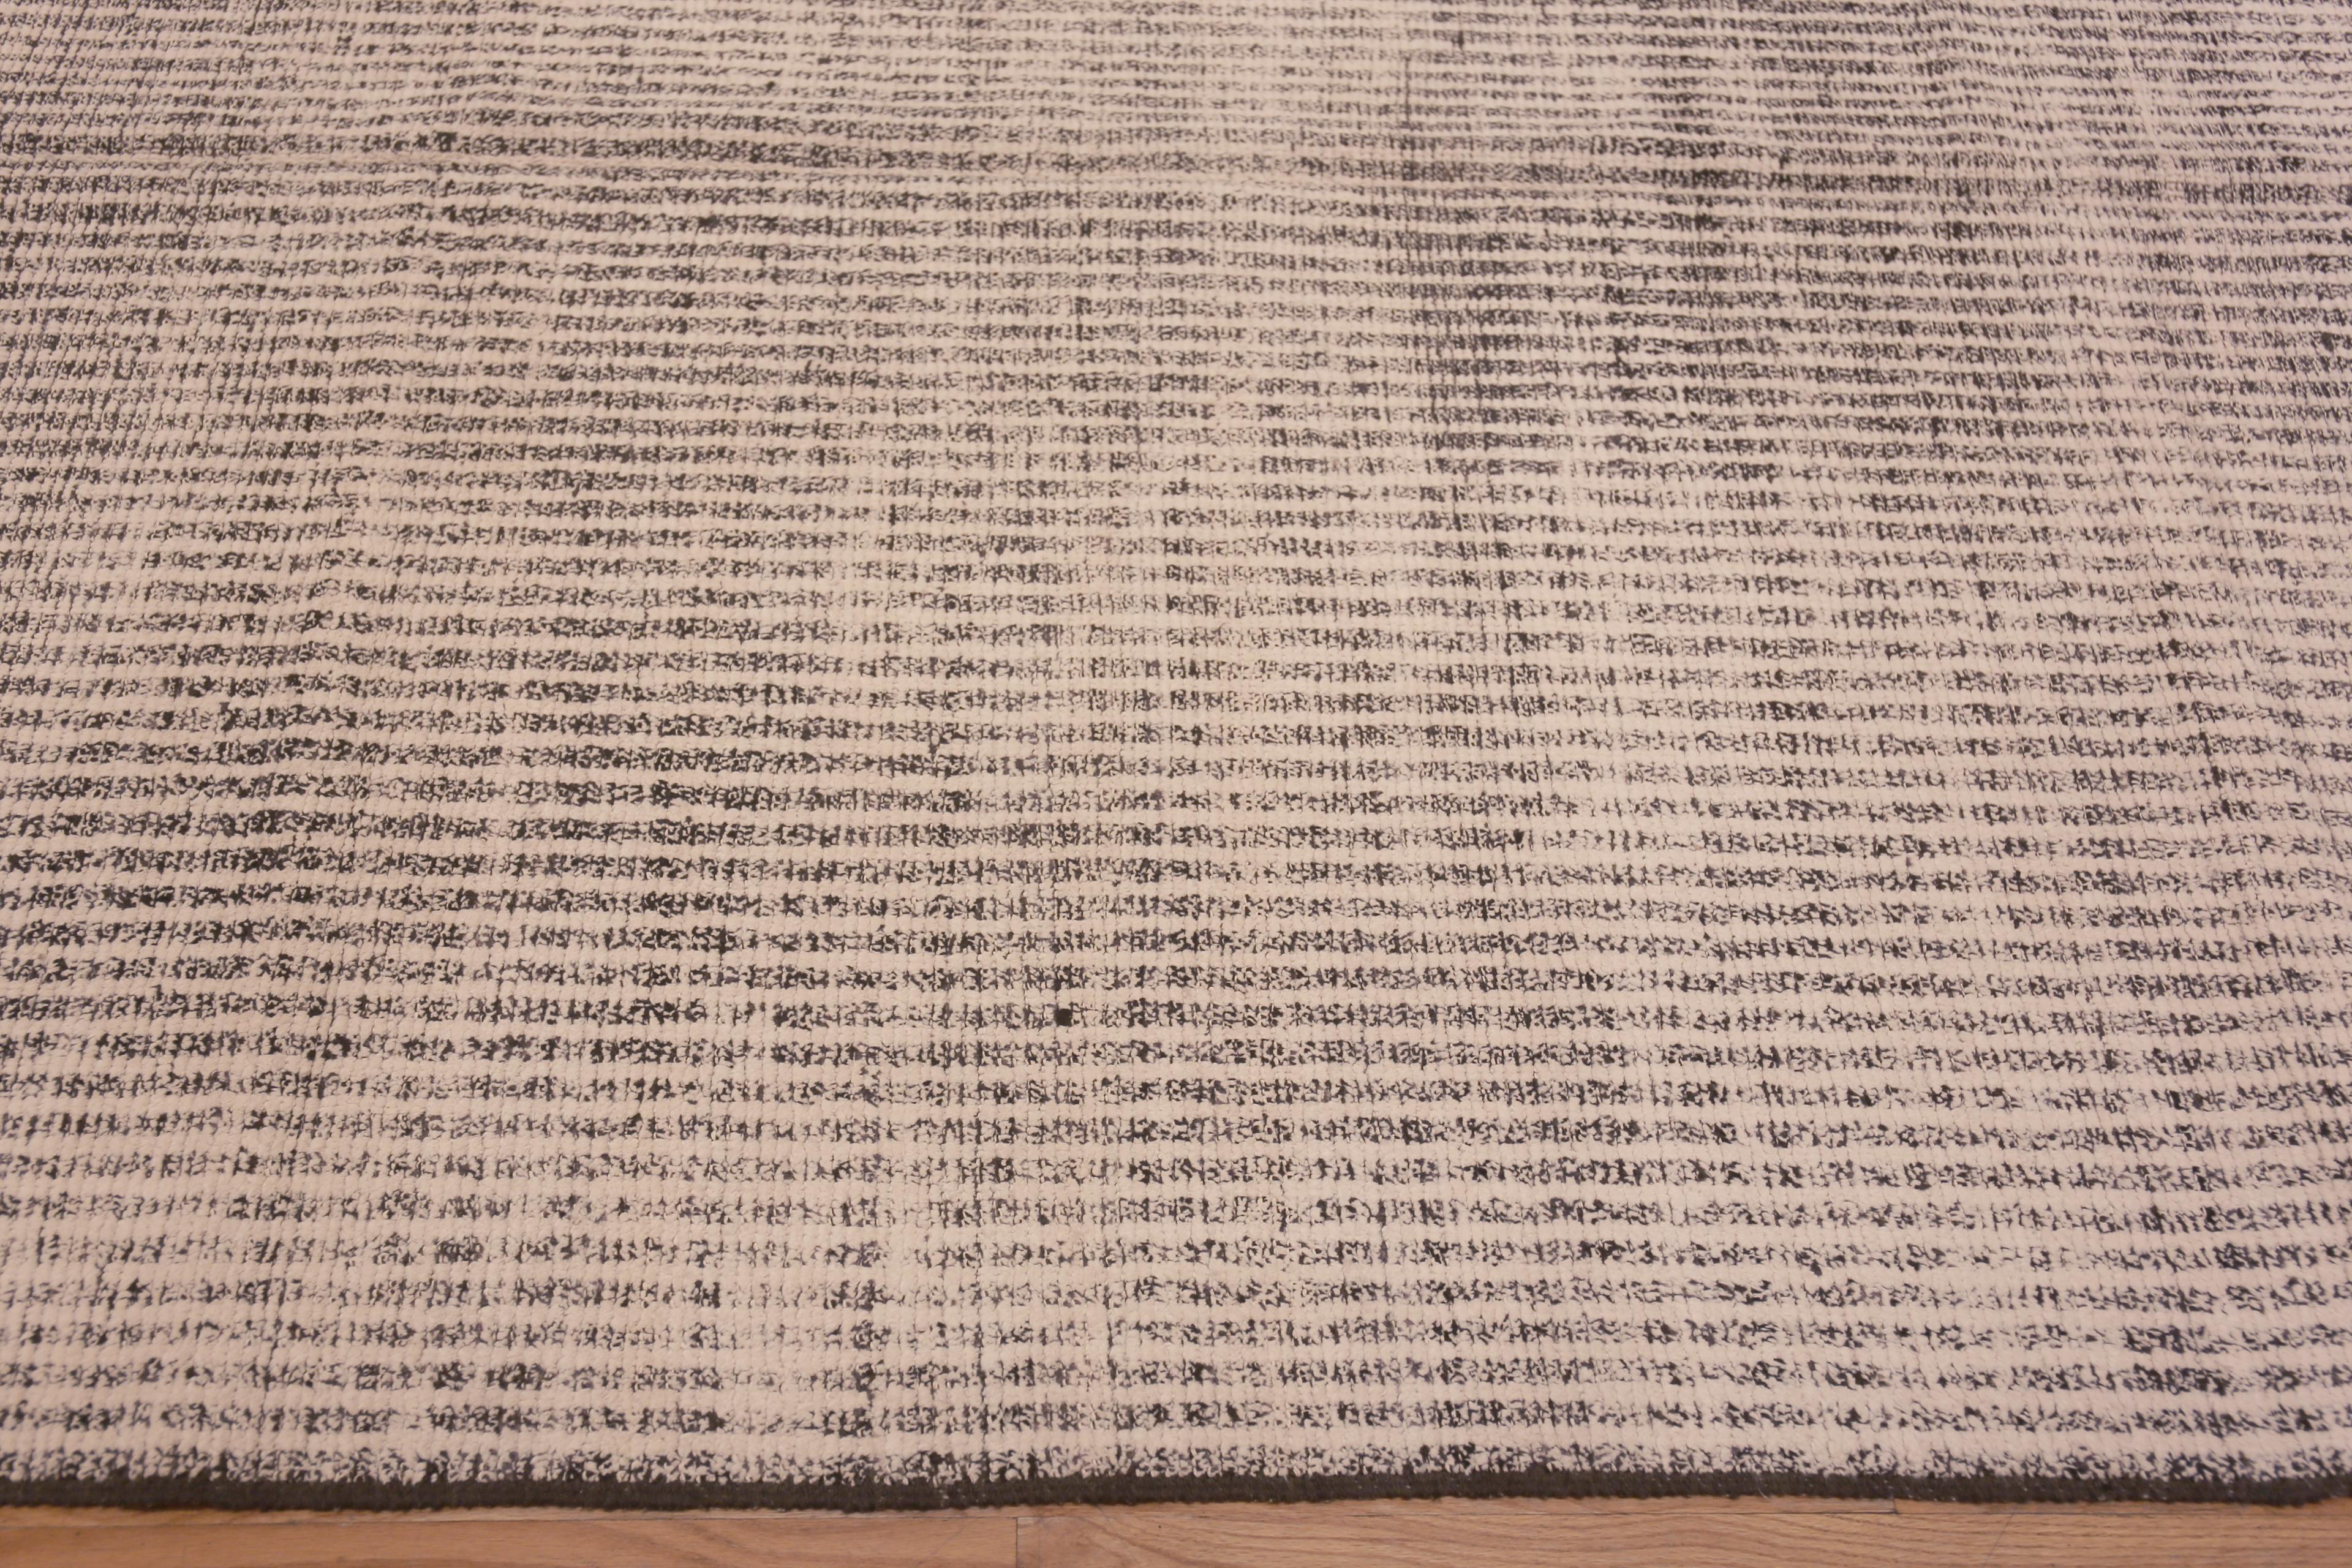 Nazmiyal Kollektion Moderner Teppich mit geometrischem Streifenmuster 9'9